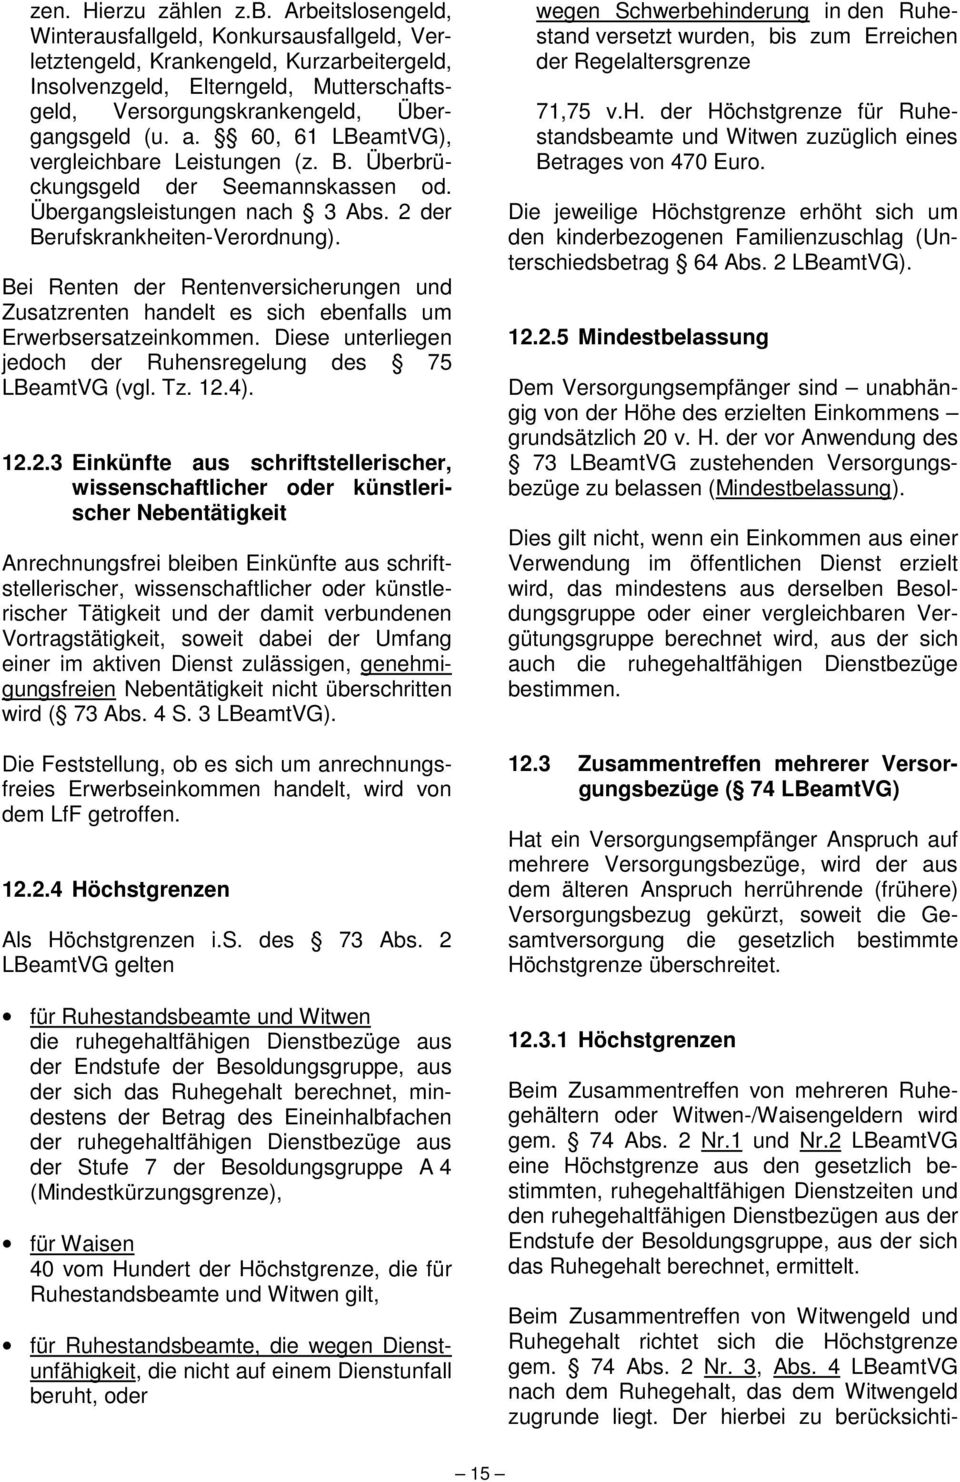 60, 61 LBeamtVG), vergleichbare Leistungen (z. B. Überbrückungsgeld der Seemannskassen od. Übergangsleistungen nach 3 Abs. 2 der Berufskrankheiten-Verordnung).